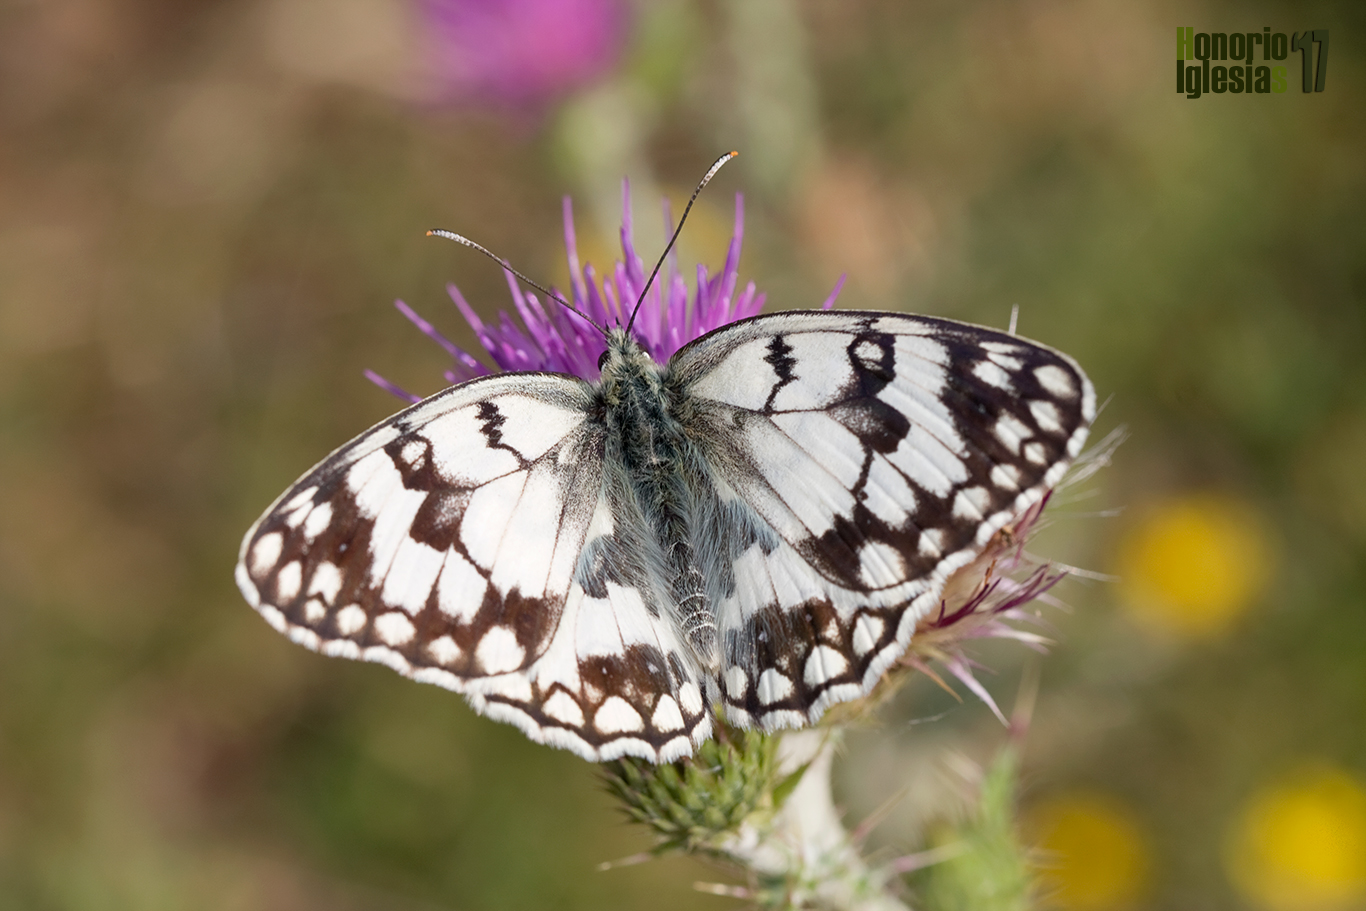 Ejemplar de mariposa medioluto montañesa o montañera (Melanargia russiae), fácilmente reconocible por la línea zigzagueante que atraviesa la celda de sus alas anteriores.